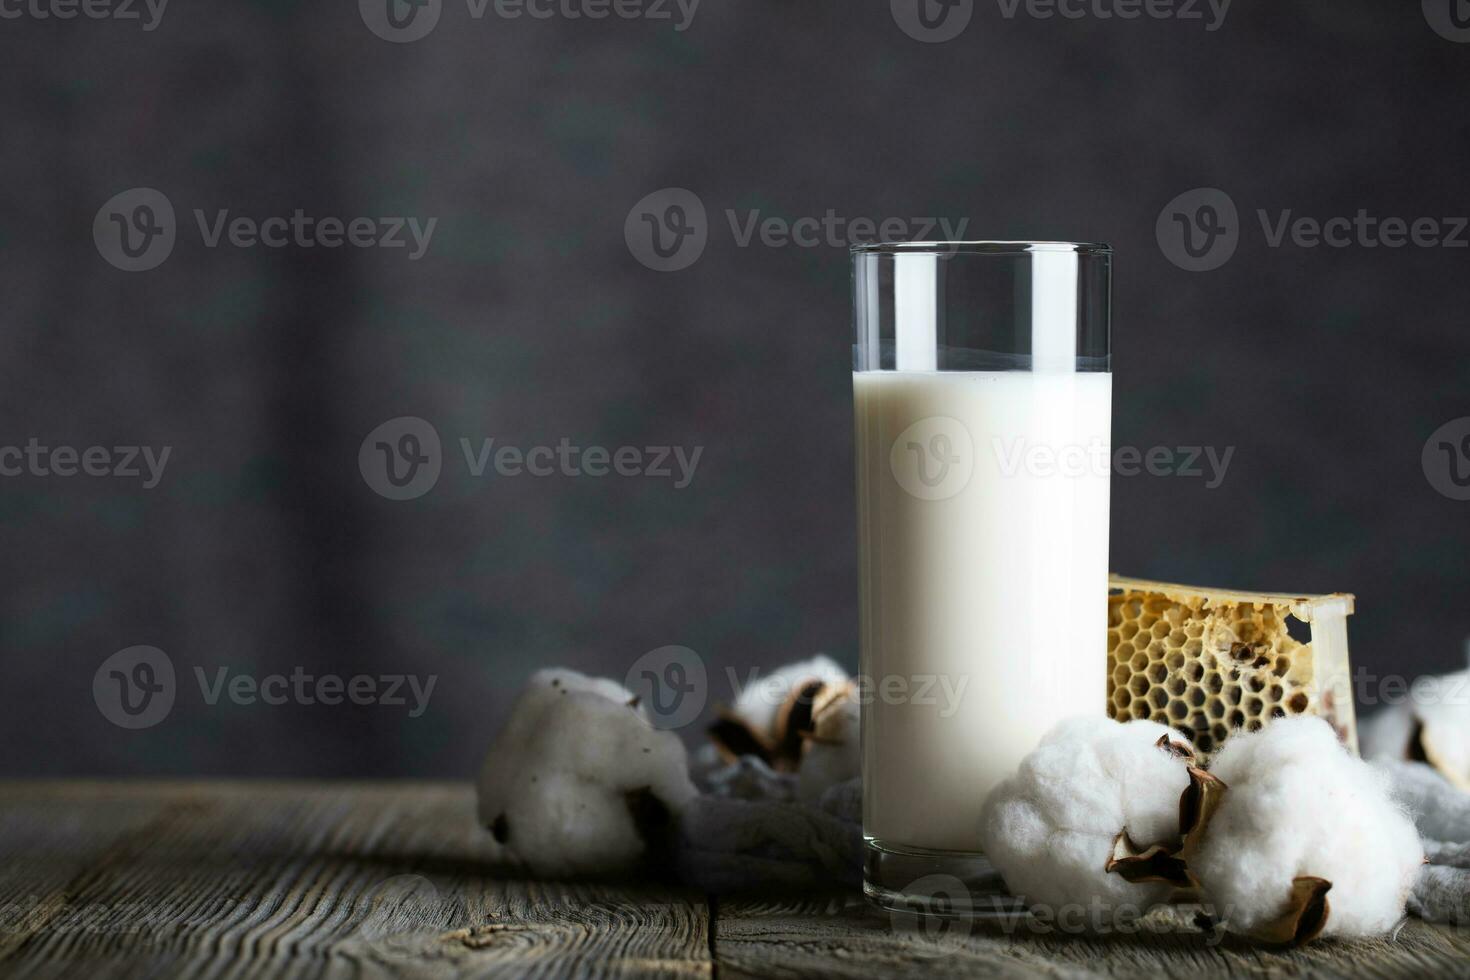 vidro do manteiga leite e algodão plantar cápsulas. foto